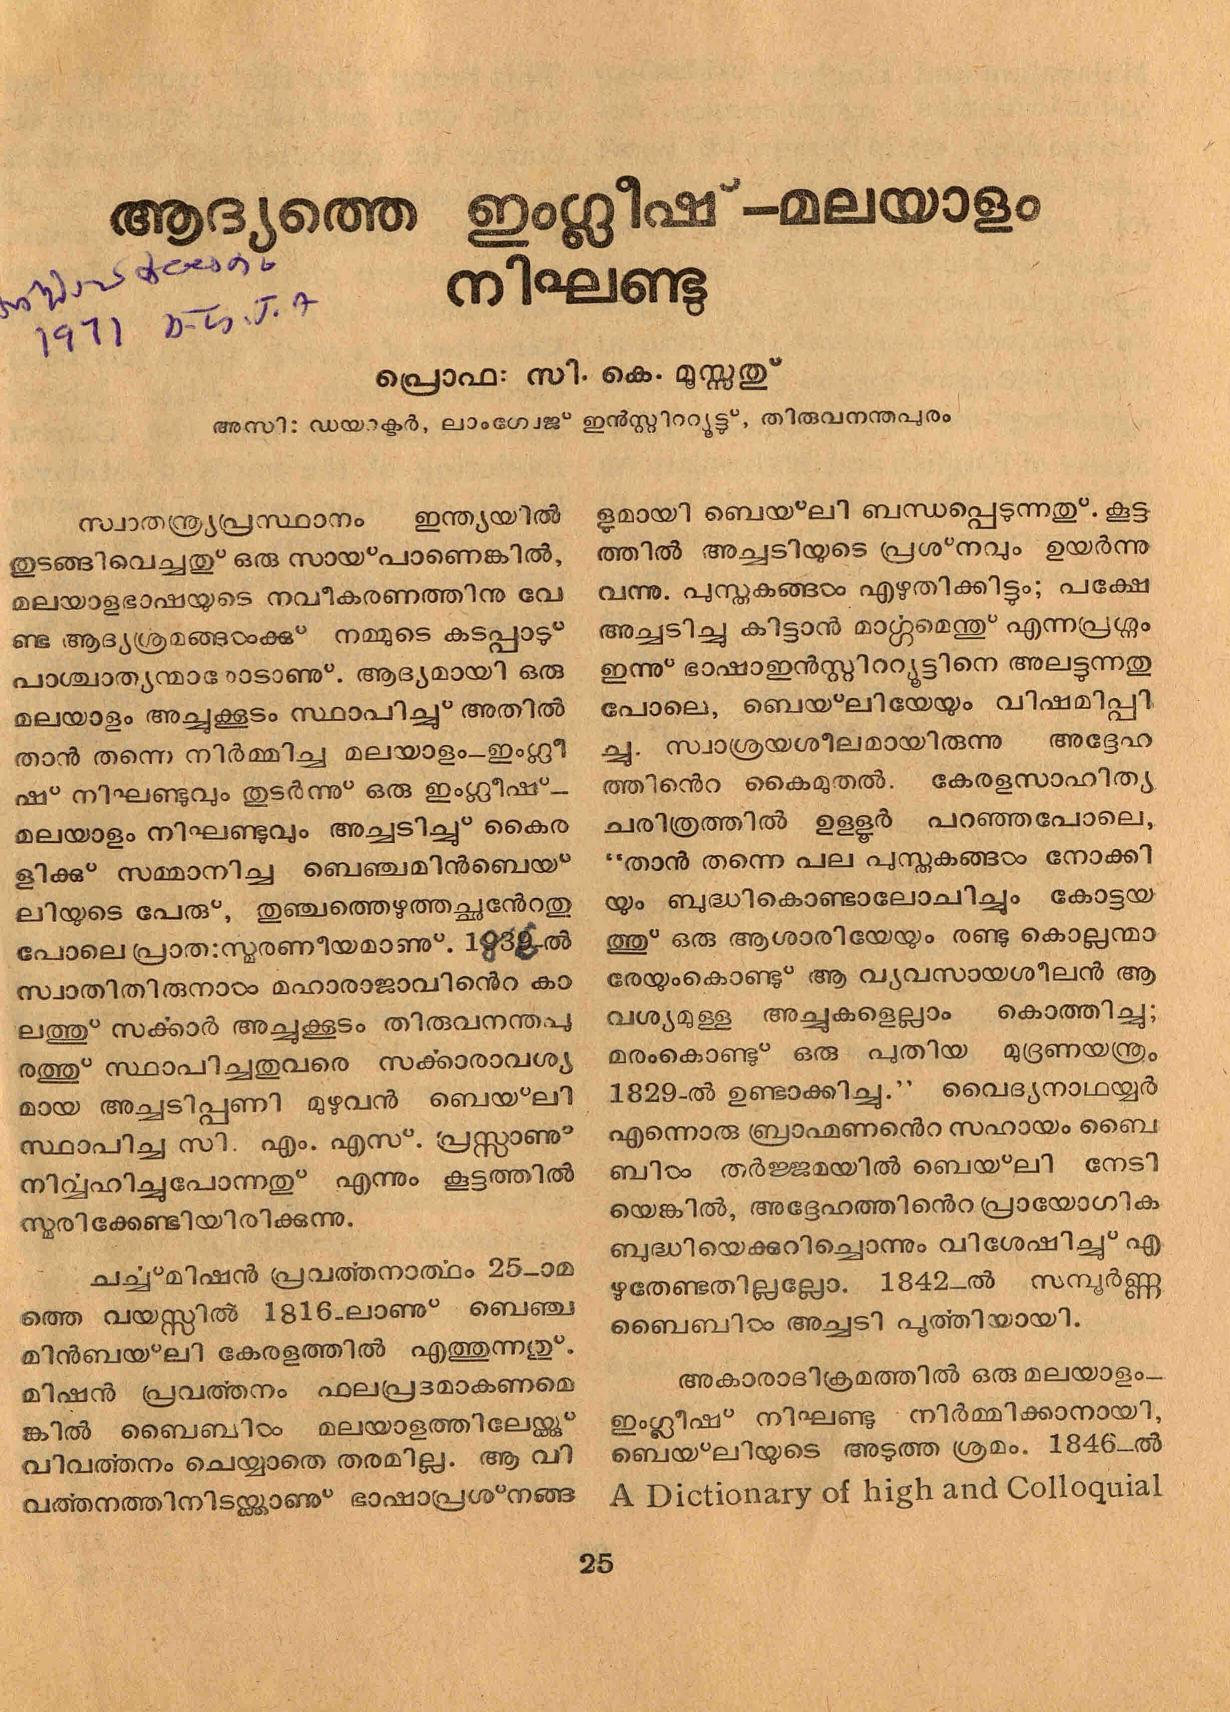 1971- ആദ്യത്തെ ഇംഗ്ളീഷ് - മലയാളം നിഖണ്ടു - സി. കെ. മൂസ്സത്